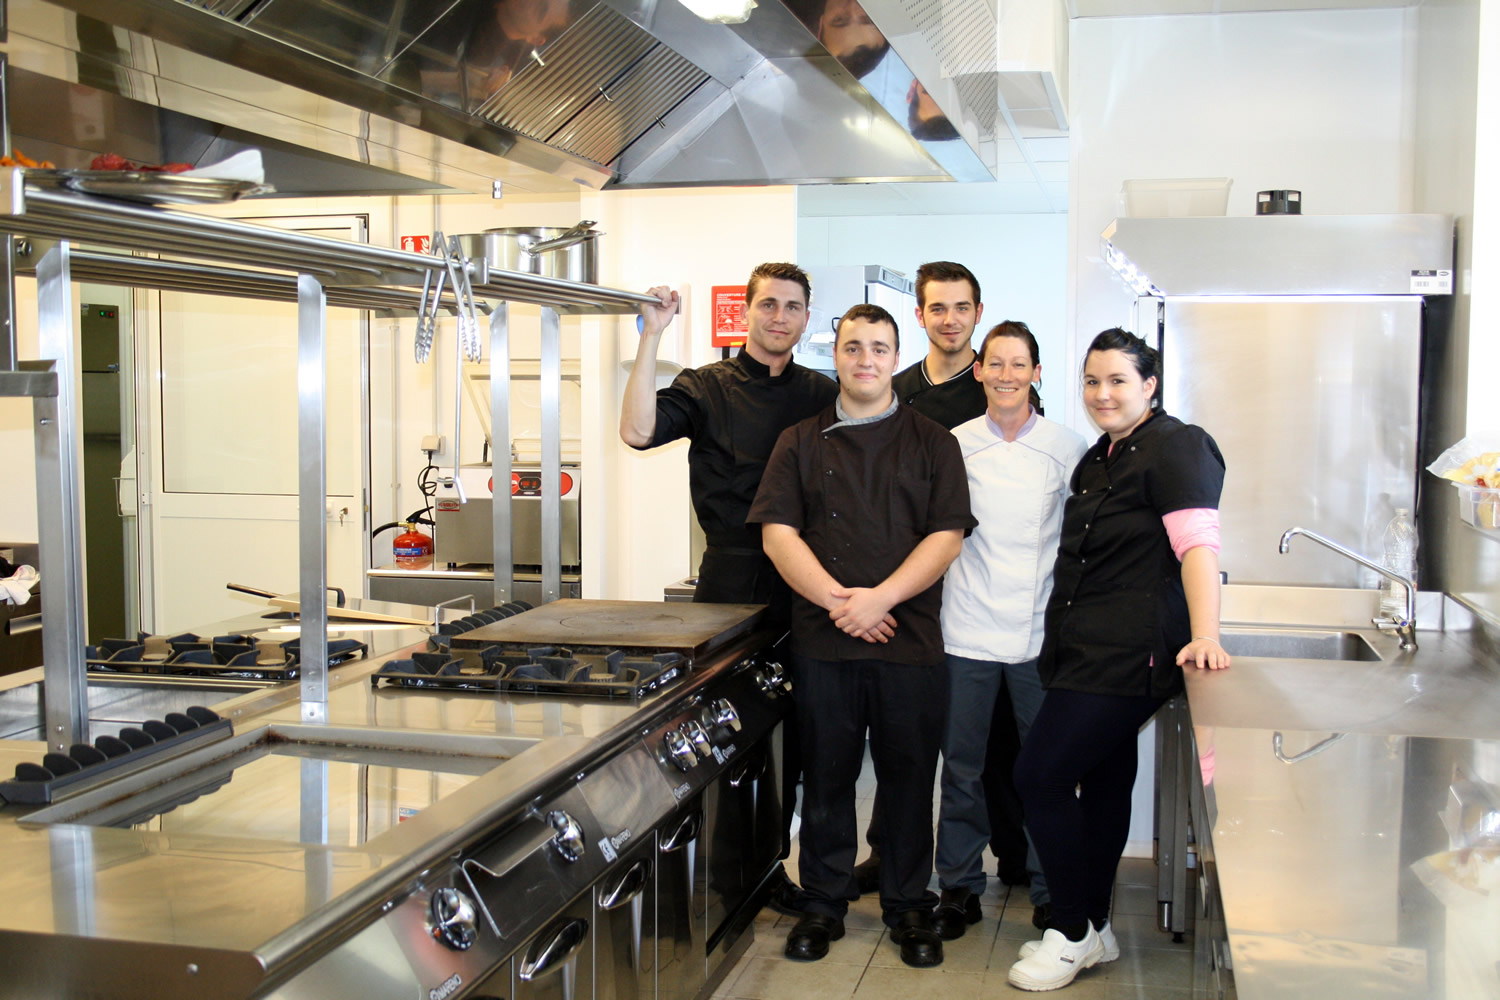 Le restaurant Ségustéro, l’aboutissement d’un projet familial, ouvre à Sisteron !